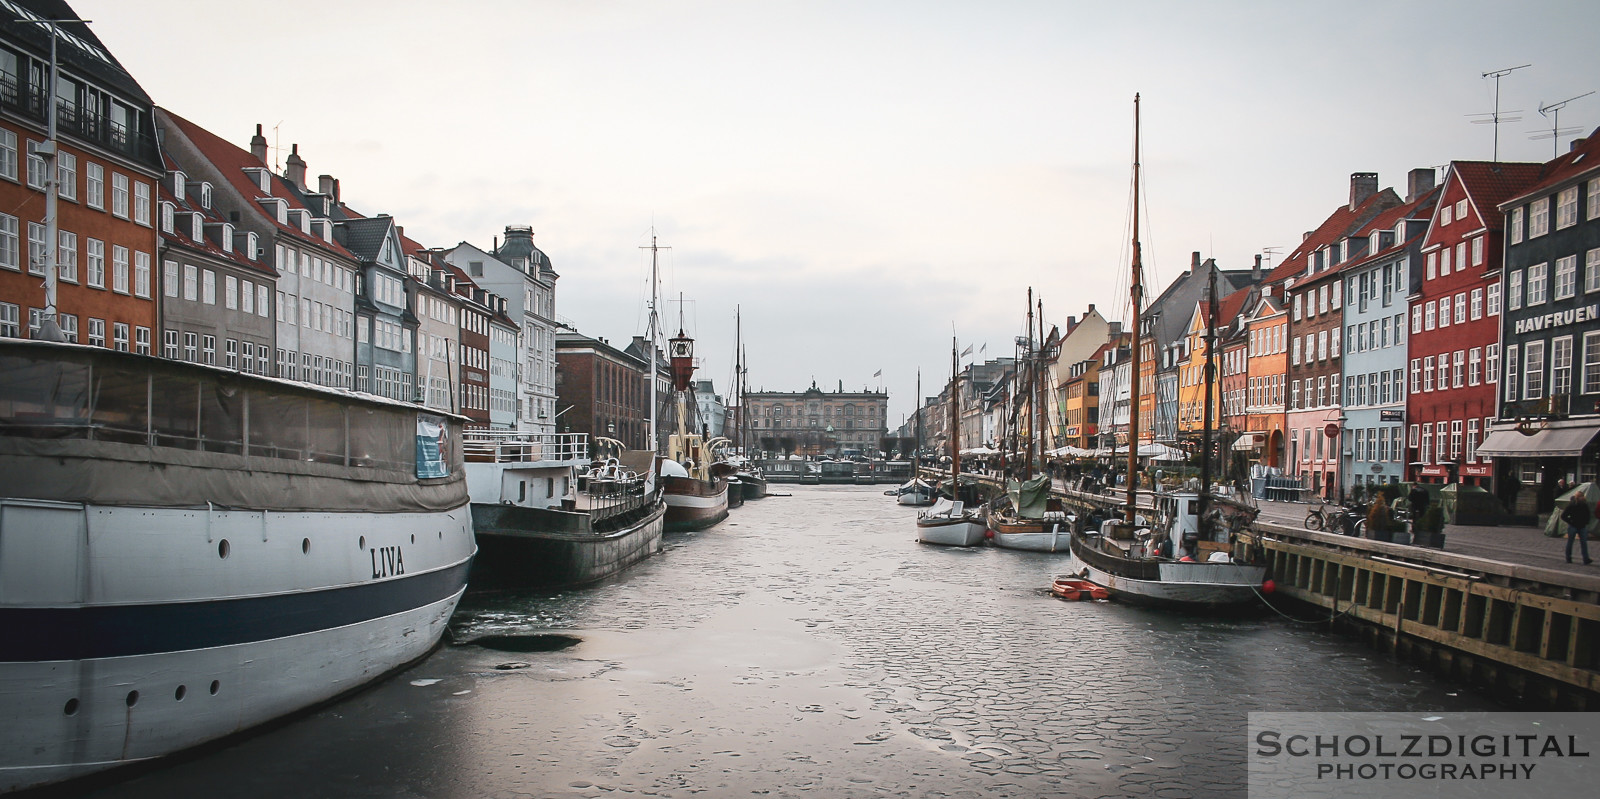 Kopenhagen, Dänemark, Fotografie, Städtereisen, Sightseeing, Schlzdigital